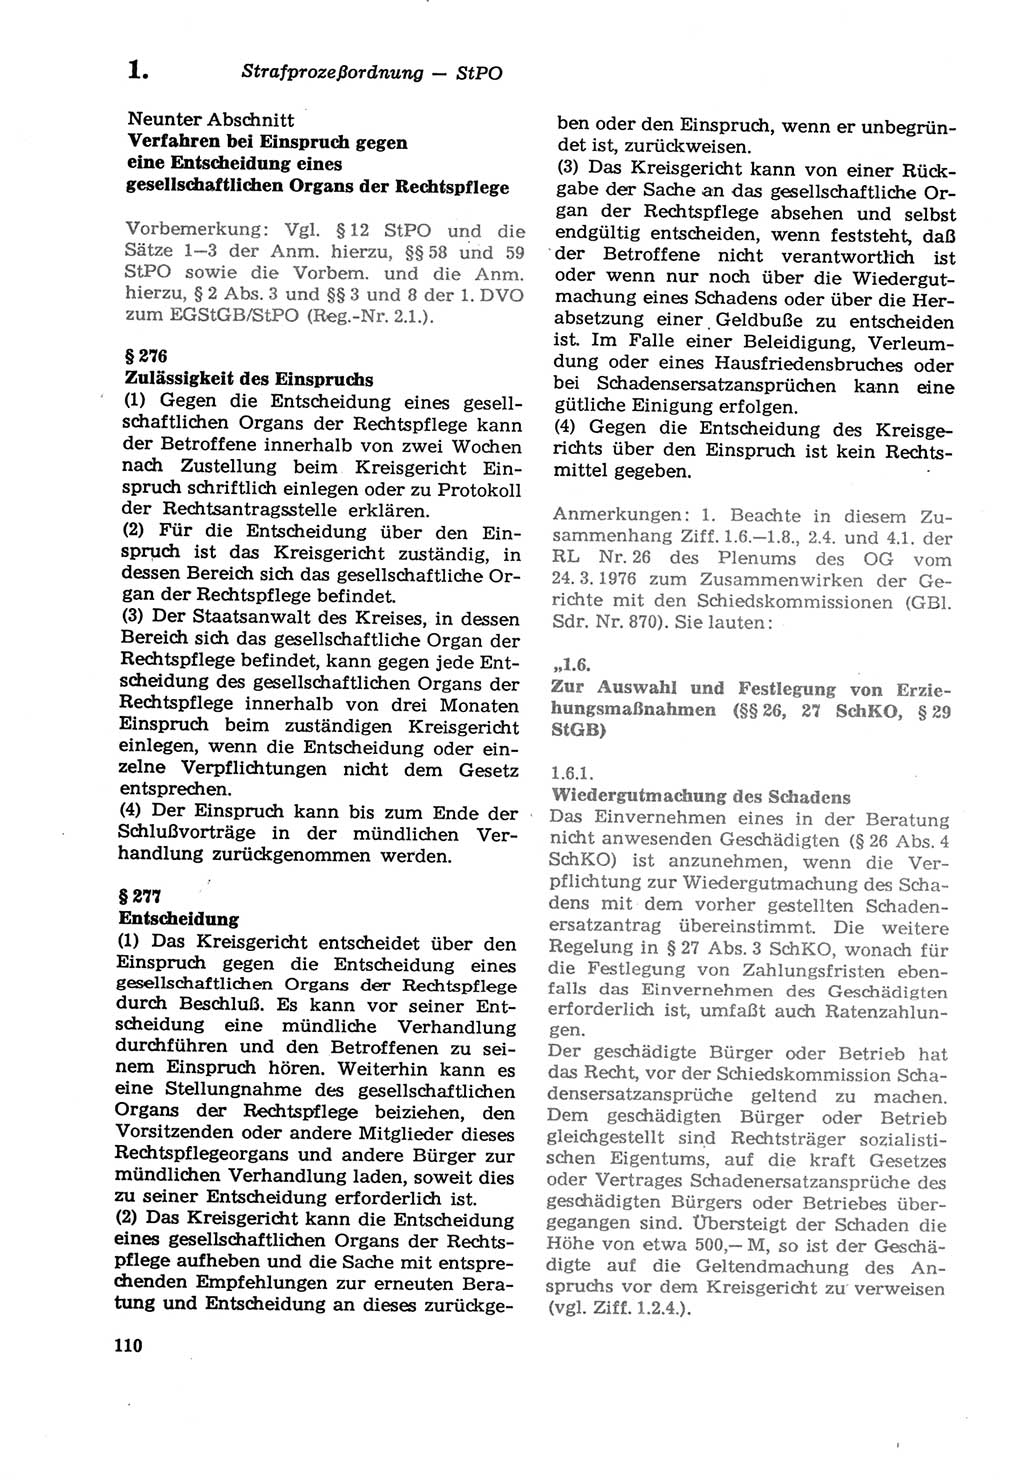 Strafprozeßordnung (StPO) der Deutschen Demokratischen Republik (DDR) sowie angrenzende Gesetze und Bestimmungen 1979, Seite 110 (StPO DDR Ges. Best. 1979, S. 110)